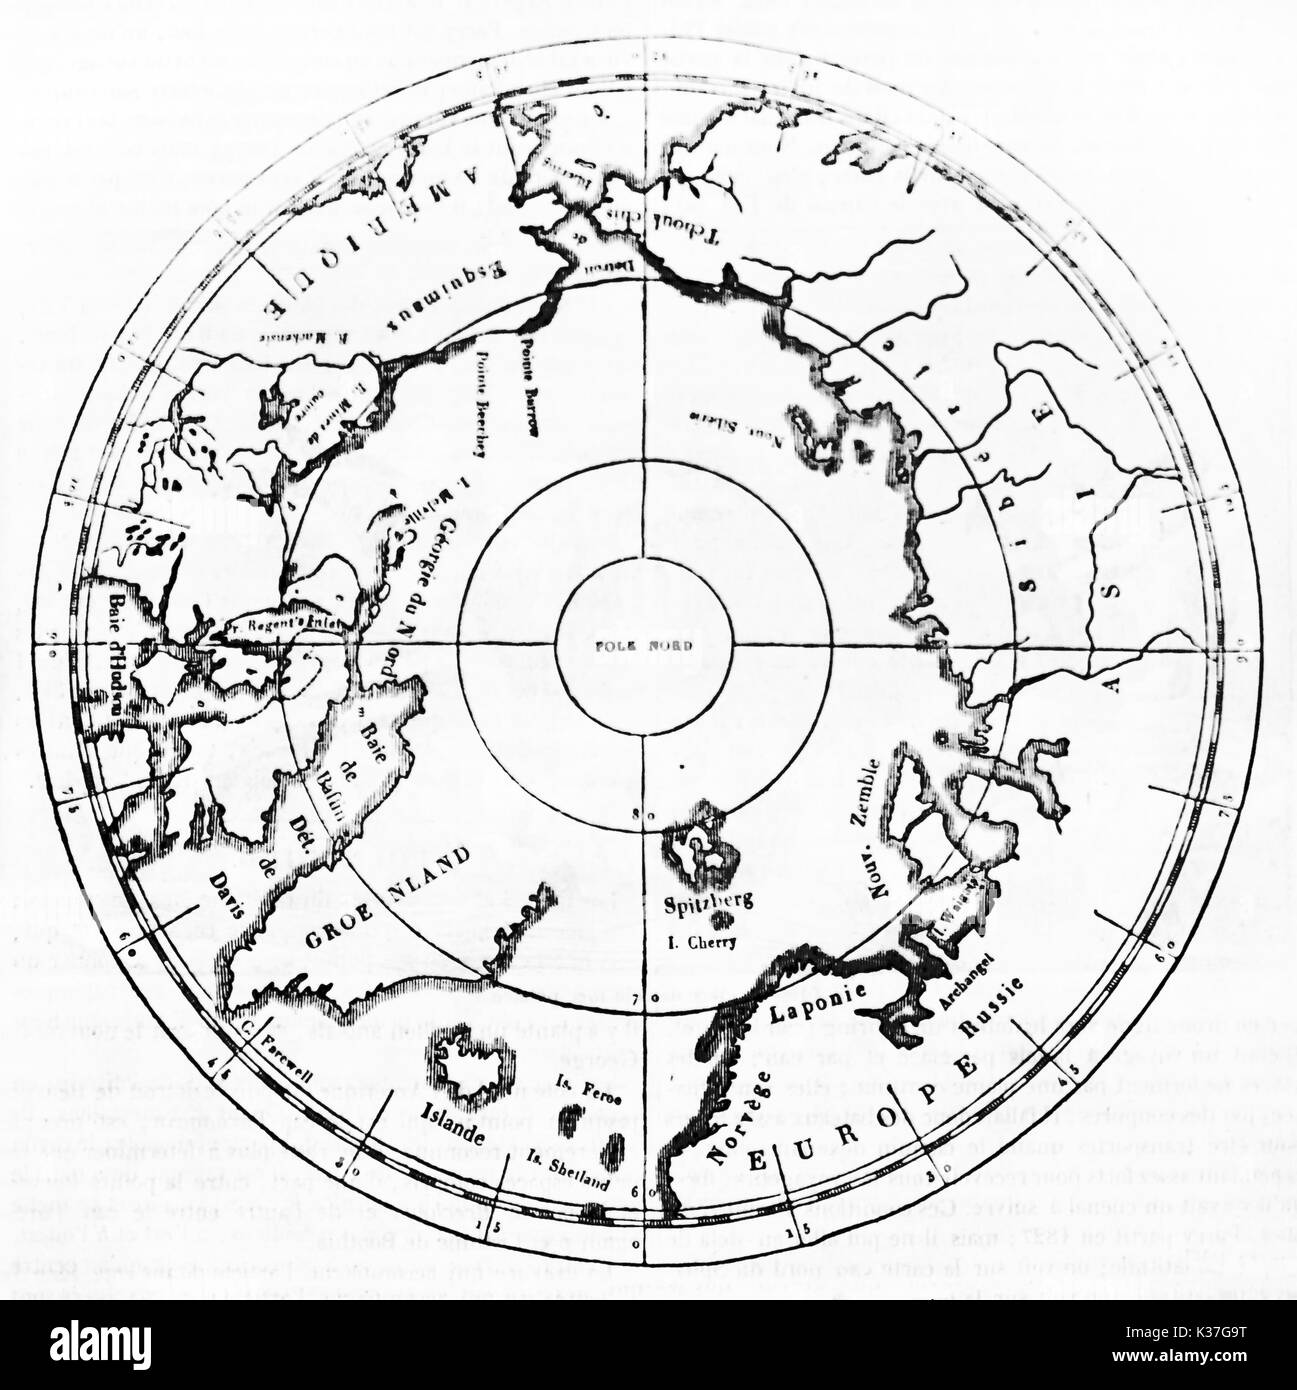 Mapa antiguo aislado del Polo Norte. Ilustración antigua de autor desconocido, publicado en el Magasin pintoresco, París, 1834 Foto de stock